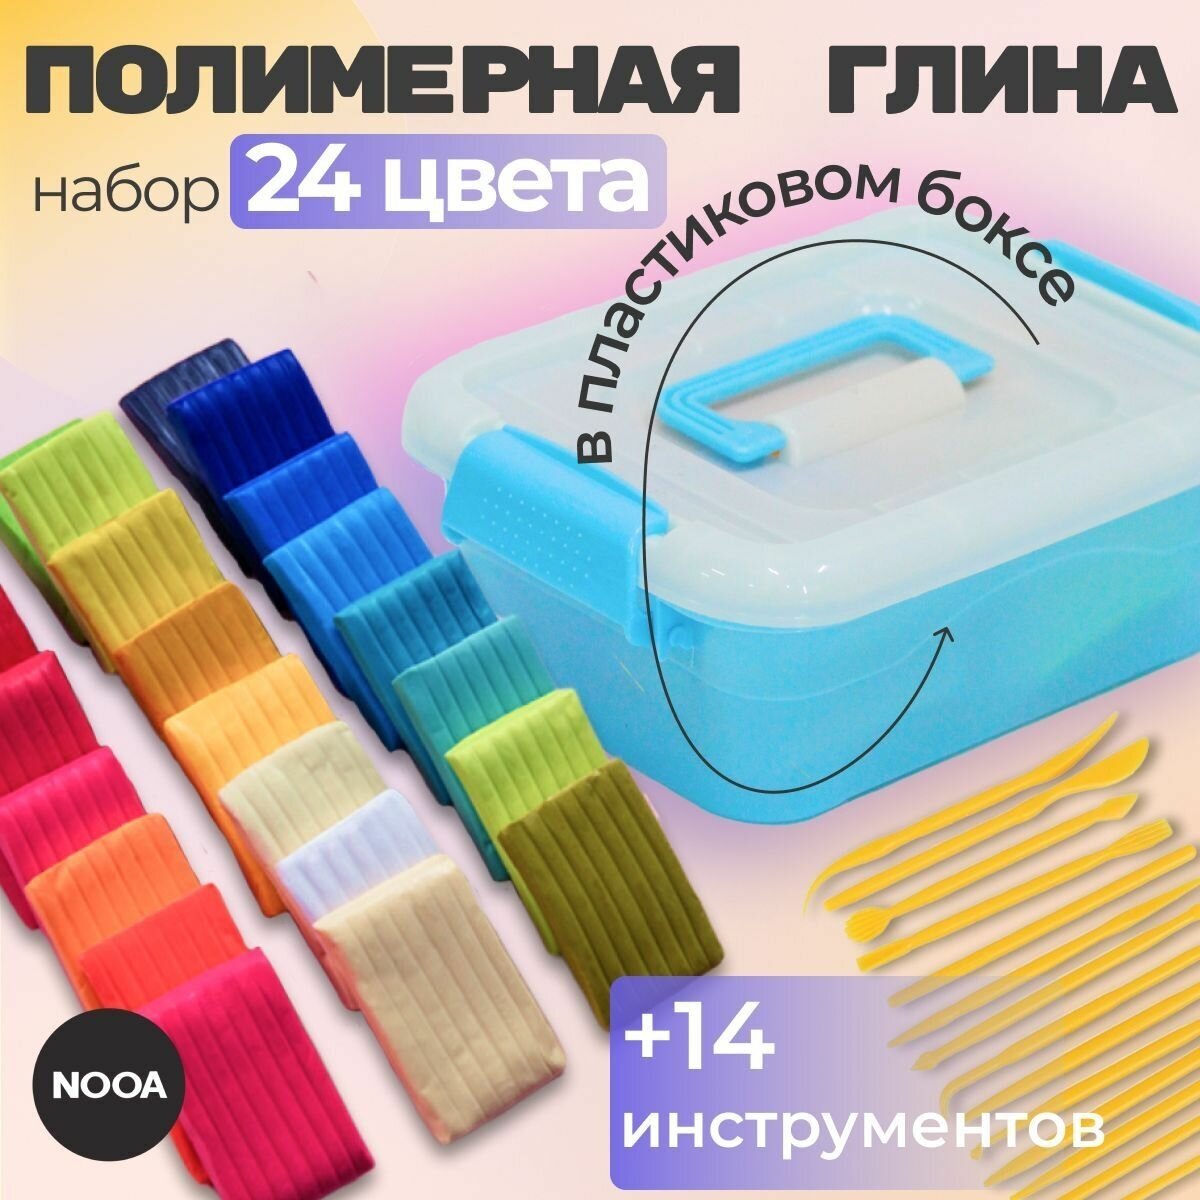 Полимерная глина  набор 24 цвета + 14 инструментов для лепки в пластиковом боксе / Набор для творчества / Глина запекаемая